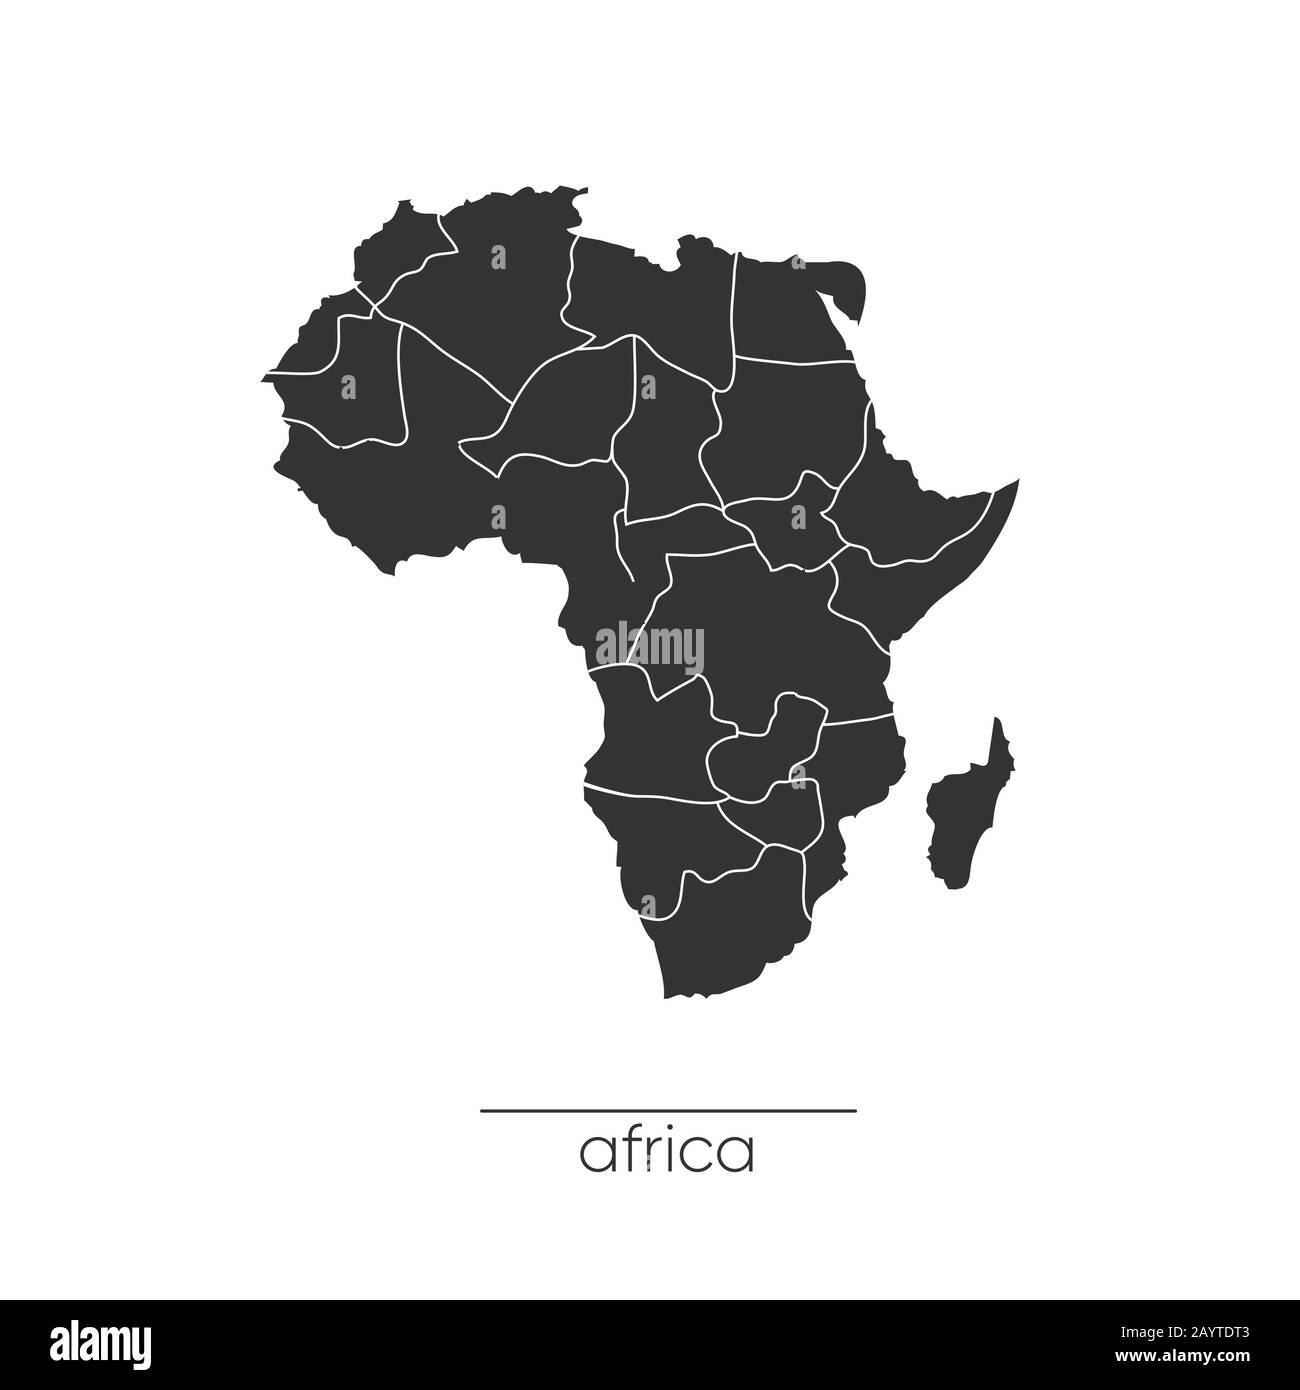 Carte de l'Afrique. Icône continent Afrique monochrome. Vecteur Illustration de Vecteur